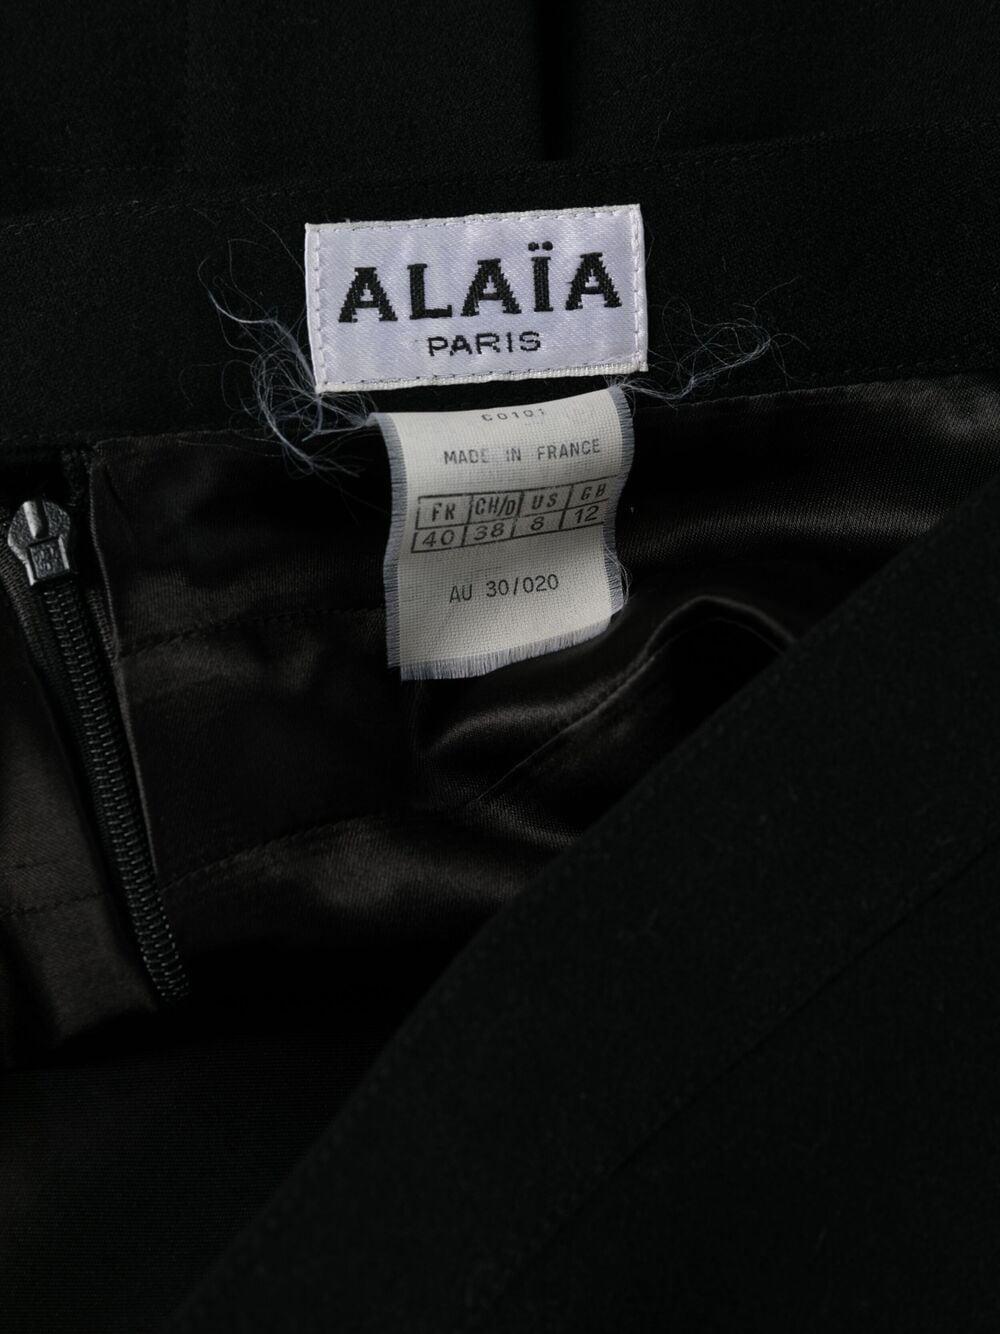 1991 Alaia Black Skirt Suit Butterflies Tribute to Elsa Schiaparelli  For Sale 2